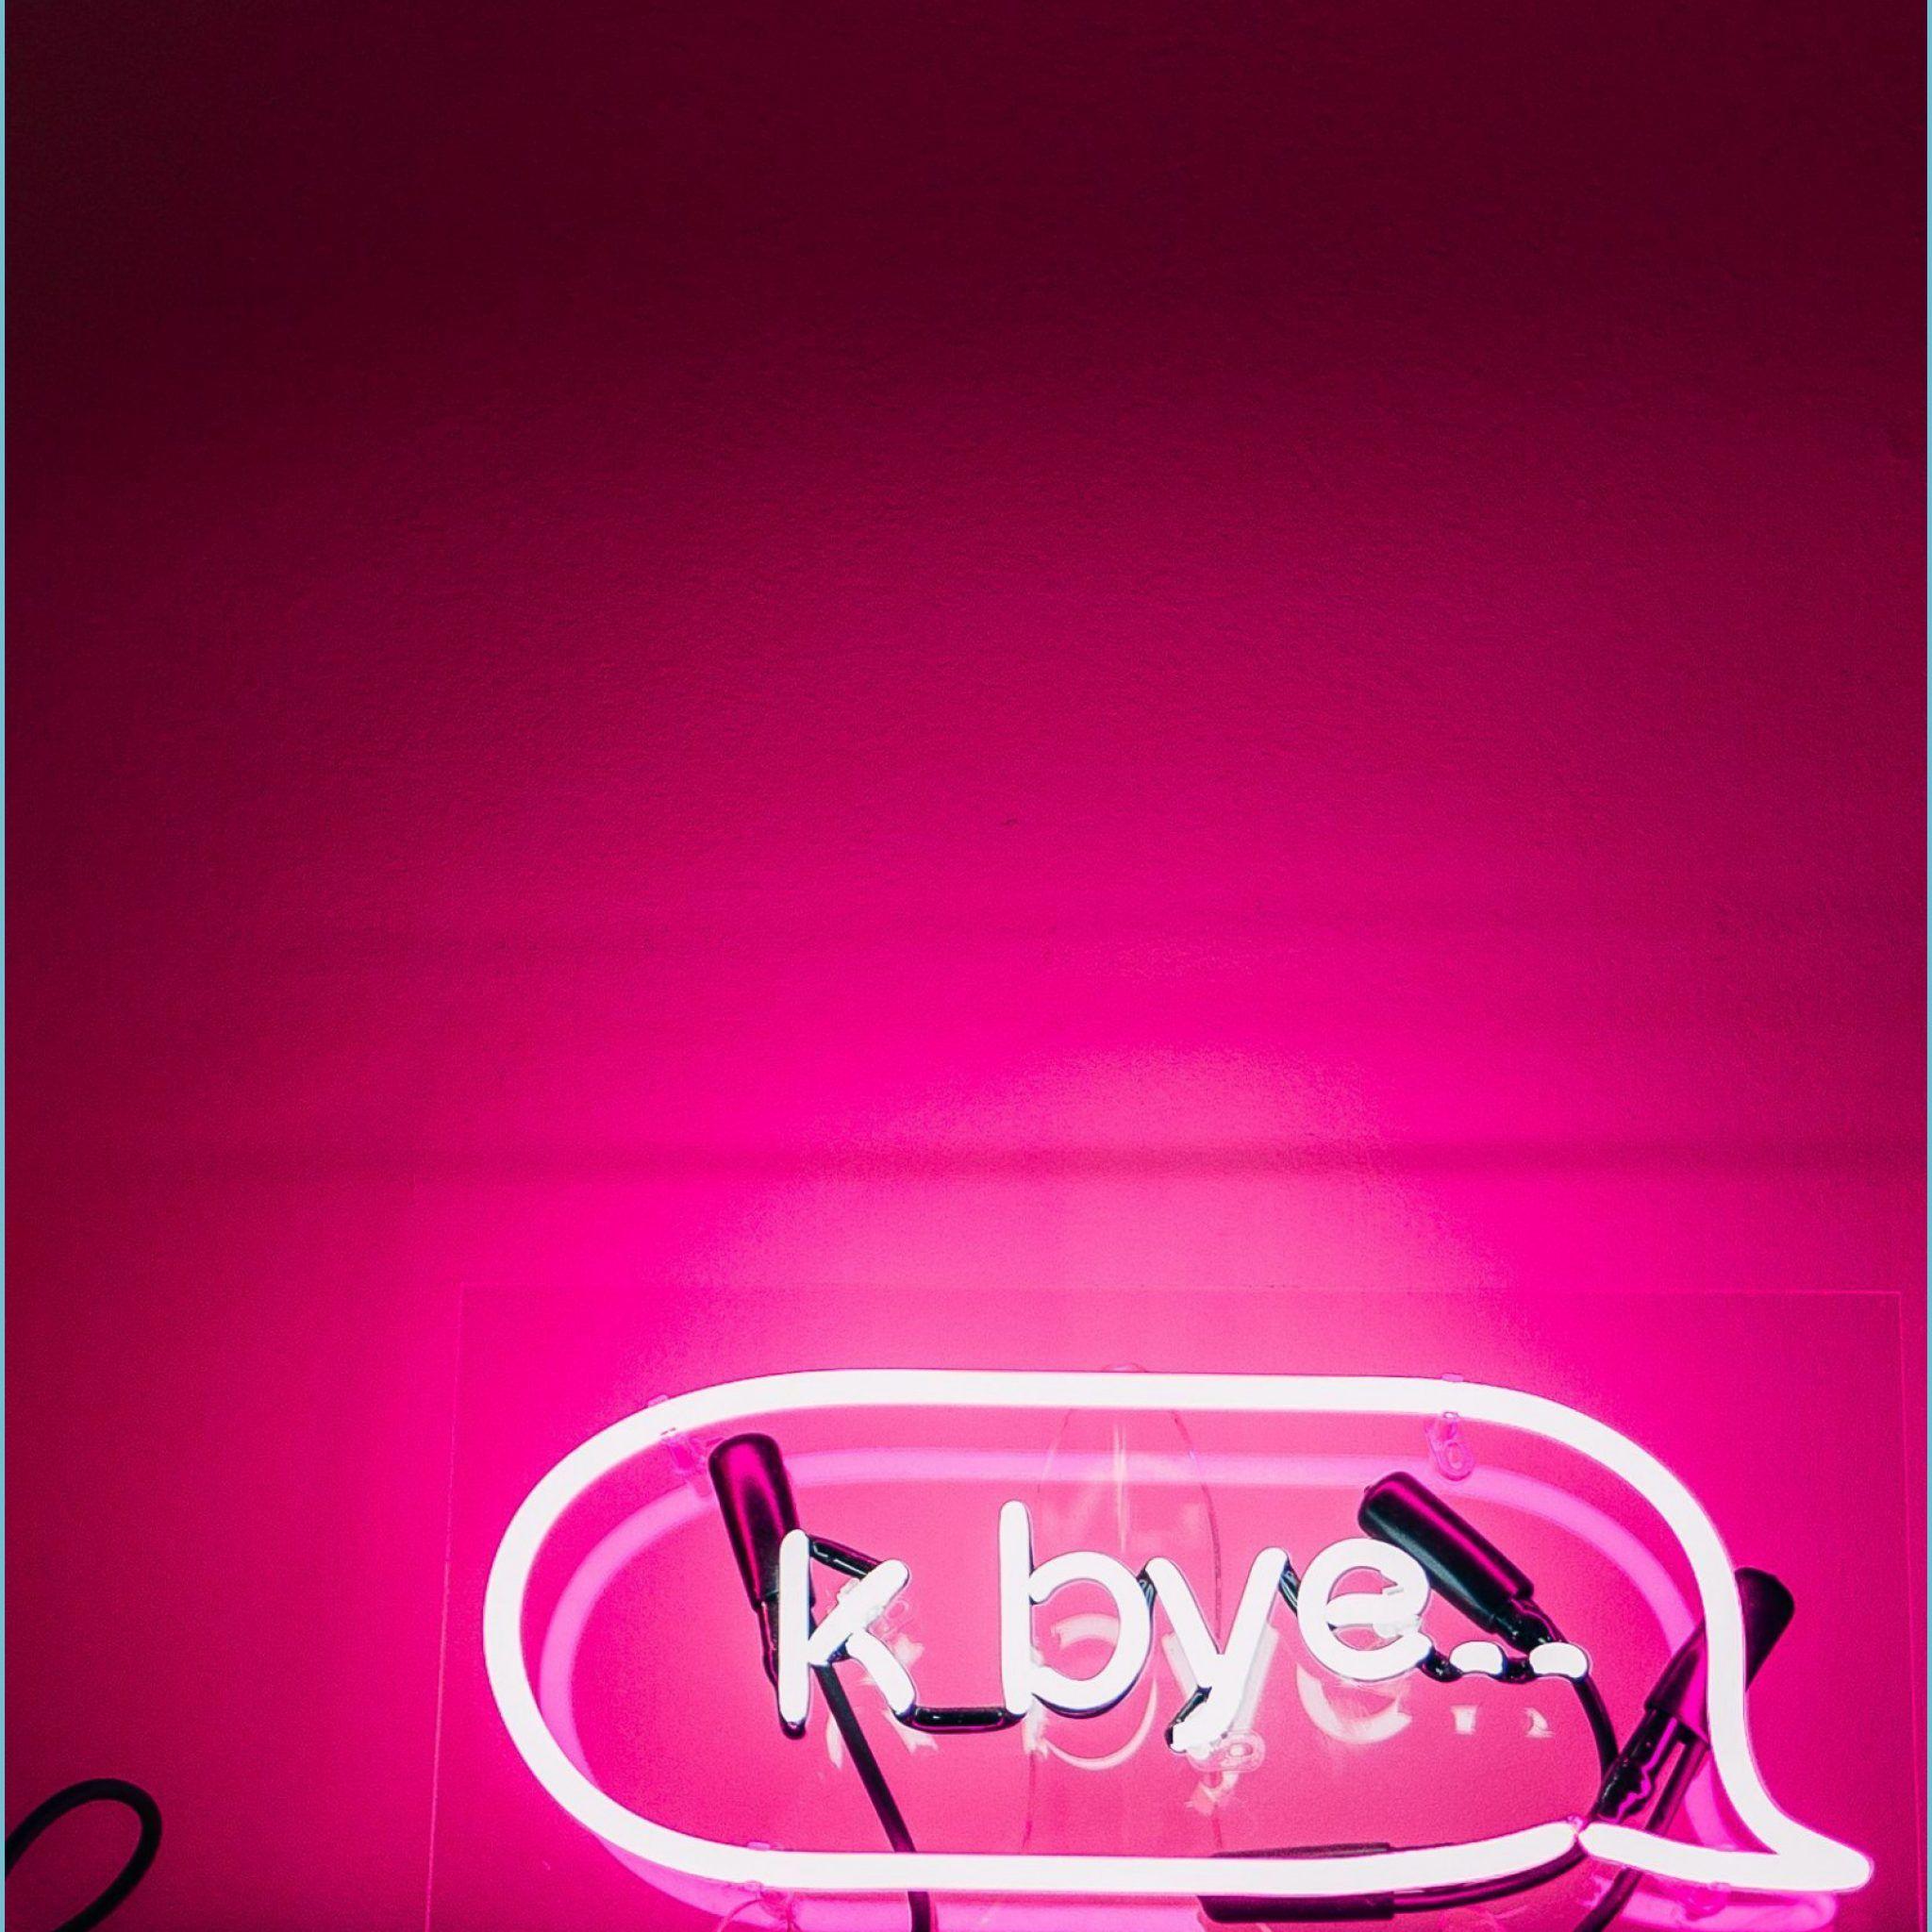 Hình nền thẩm mỹ neon hồng 2048x2048 - Hình nền thẩm mỹ neon hồng miễn phí hàng đầu - hình nền hồng neon